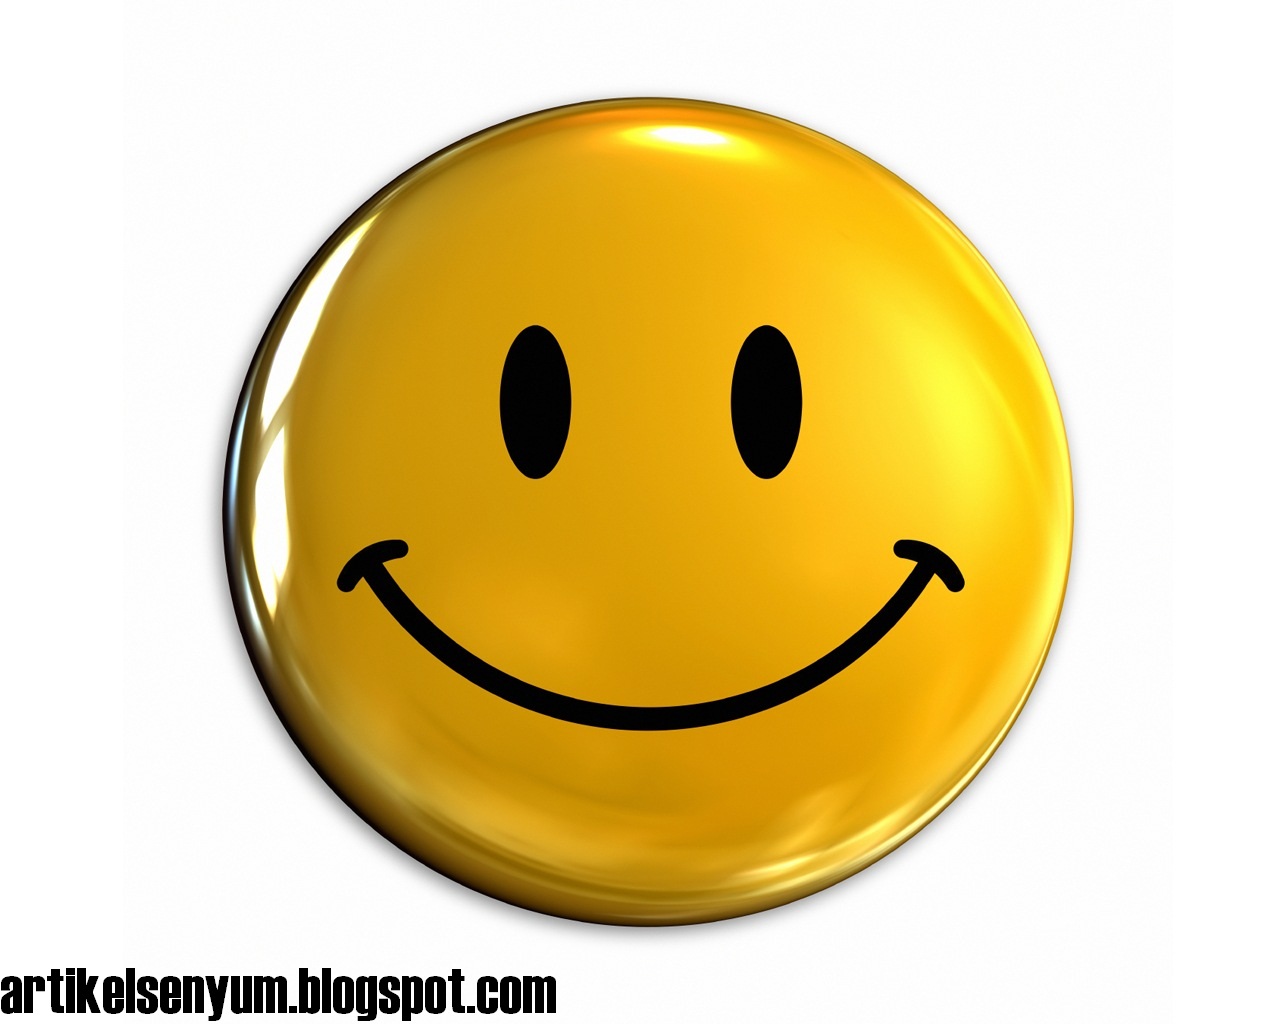 Cara Berpikir  Positif Untuk Kesuksesan Artikel Senyum